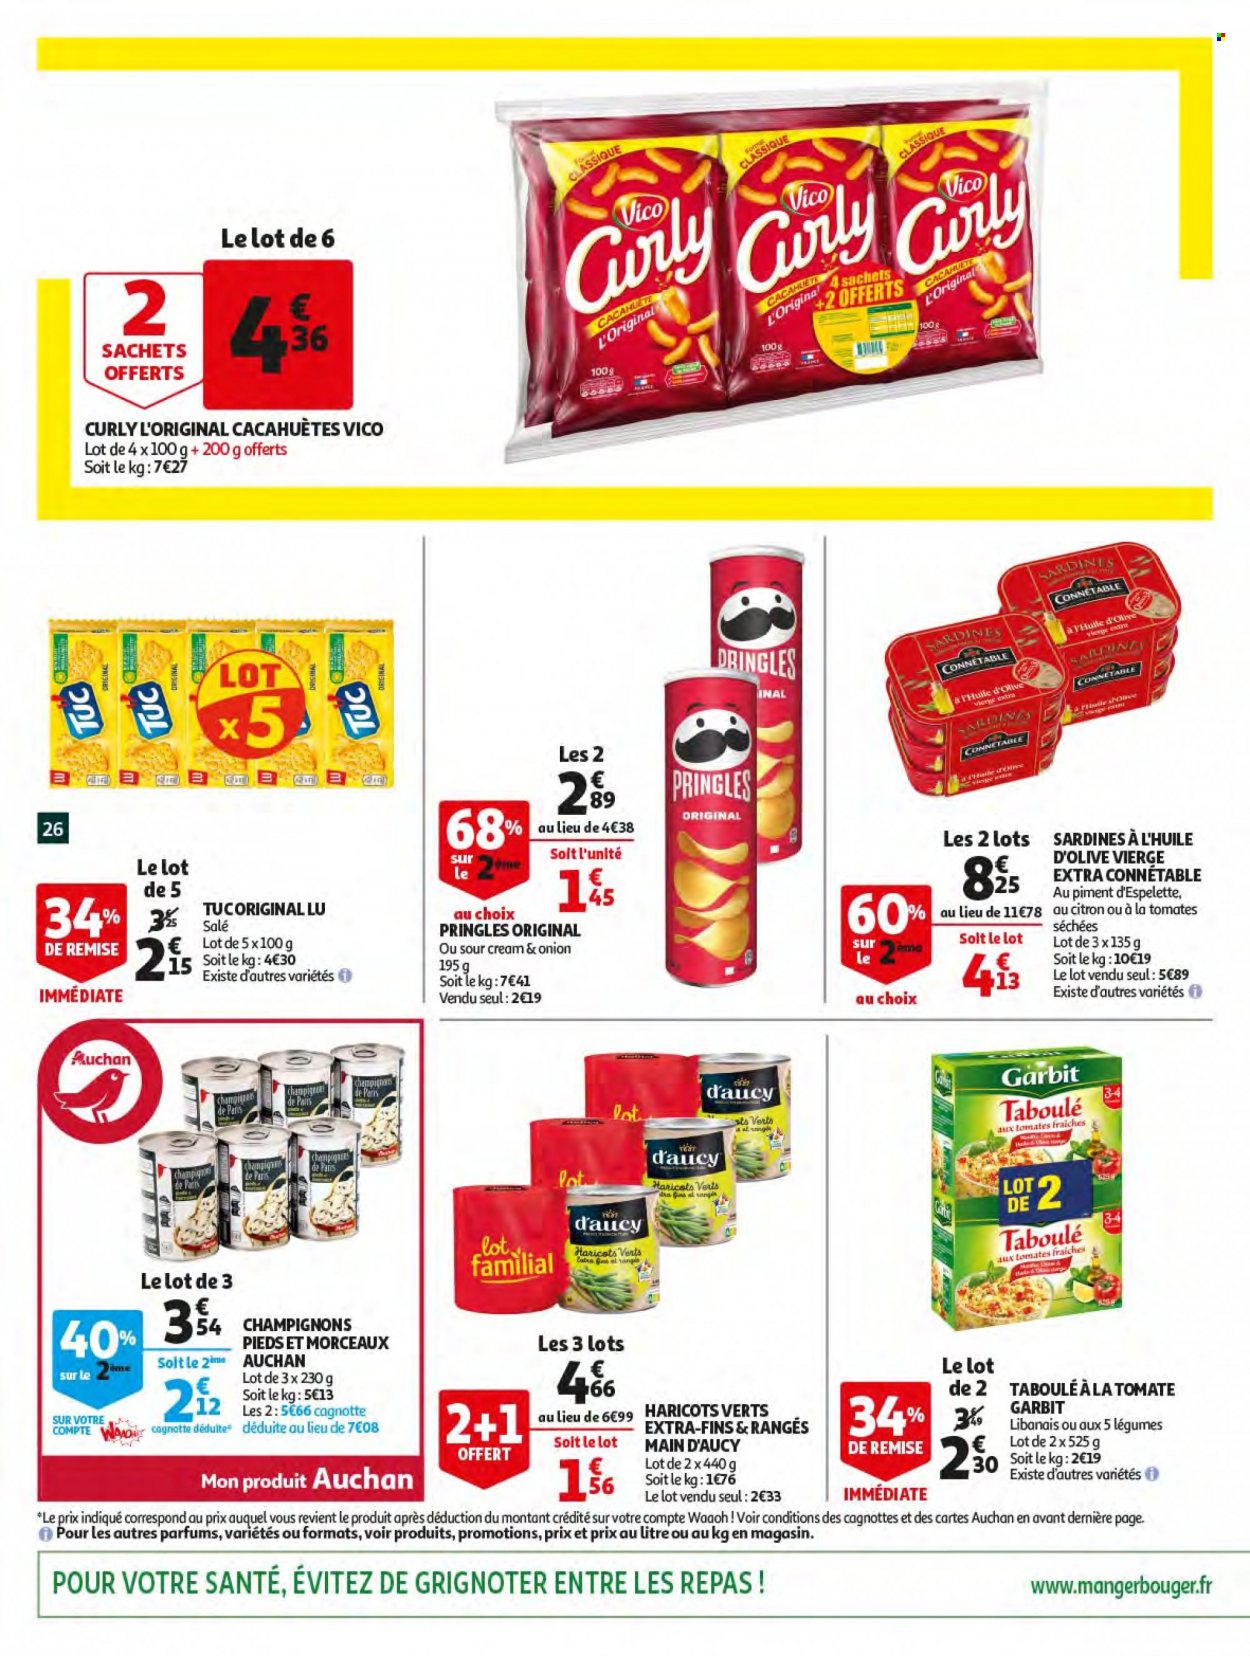 thumbnail - Catalogue Auchan - 18/05/2022 - 24/05/2022 - Produits soldés - champignon, sardines, haricots, cacahuètes, LU, chips, Vico, Pringles, tomates séchées, huile d'olive vierge extra, huile d'olive. Page 26.